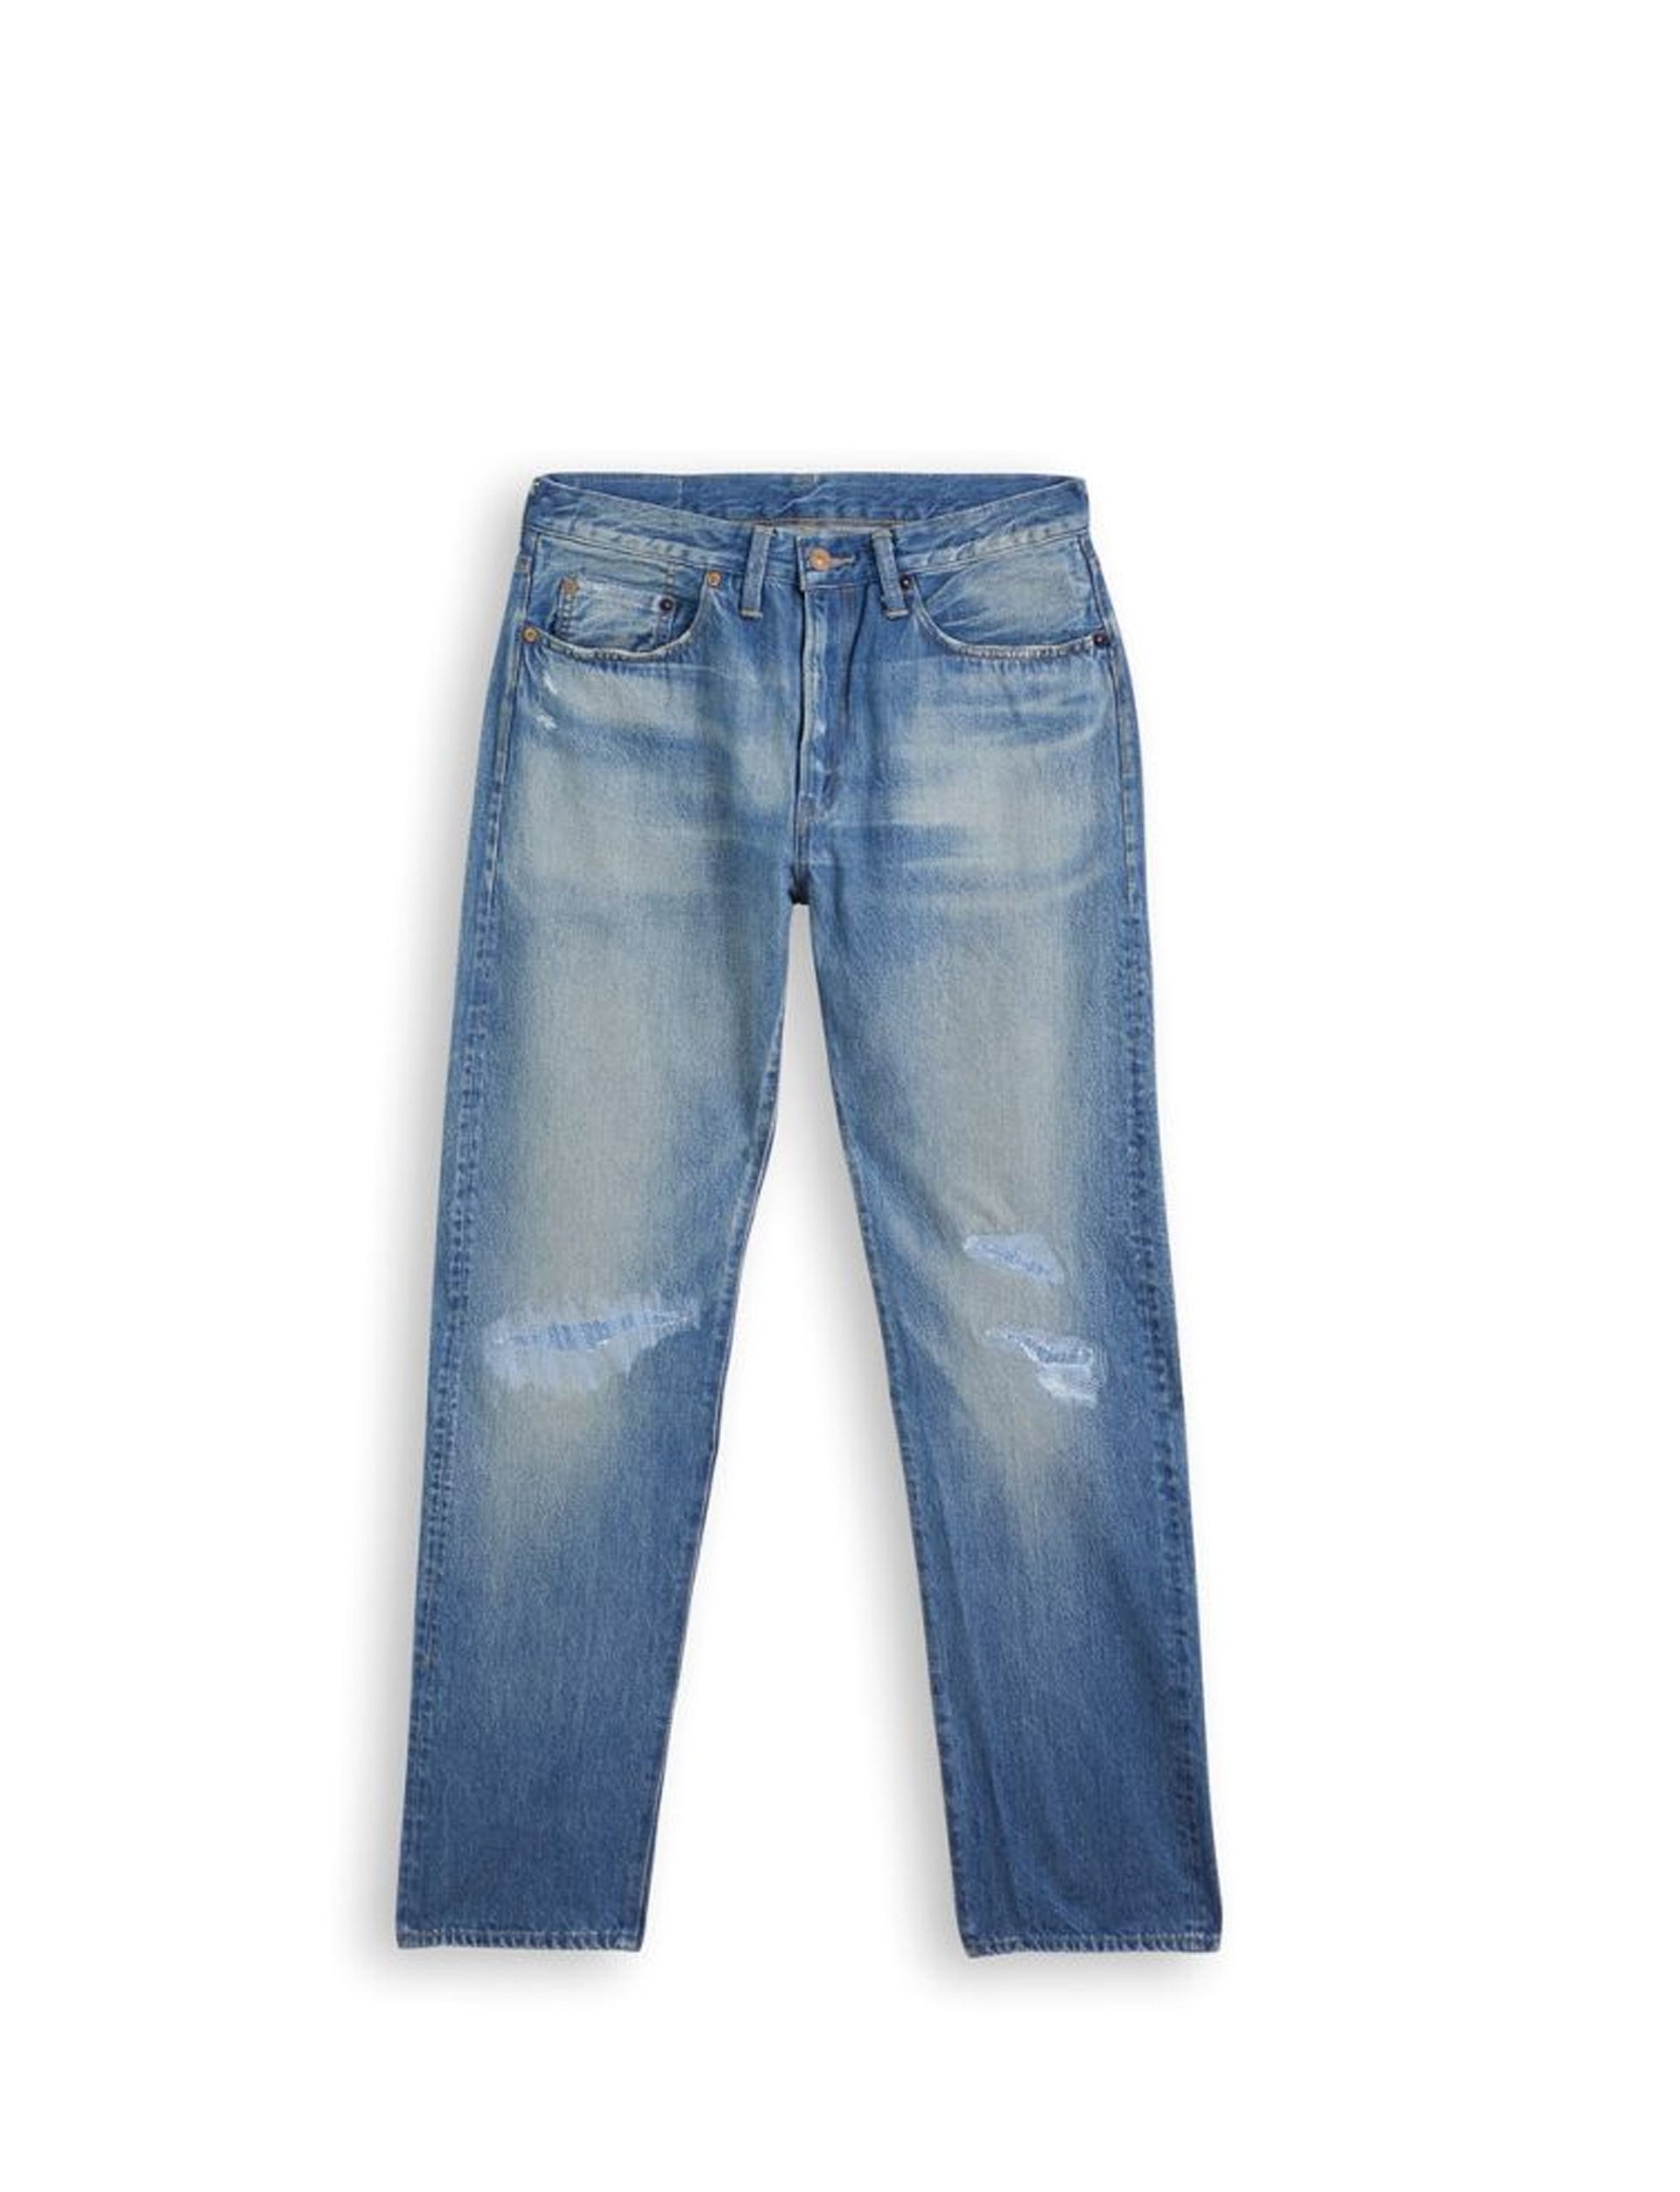 Vintage Levis 501 Blue Wash Jeans Levis Vintage Clothing LVC 